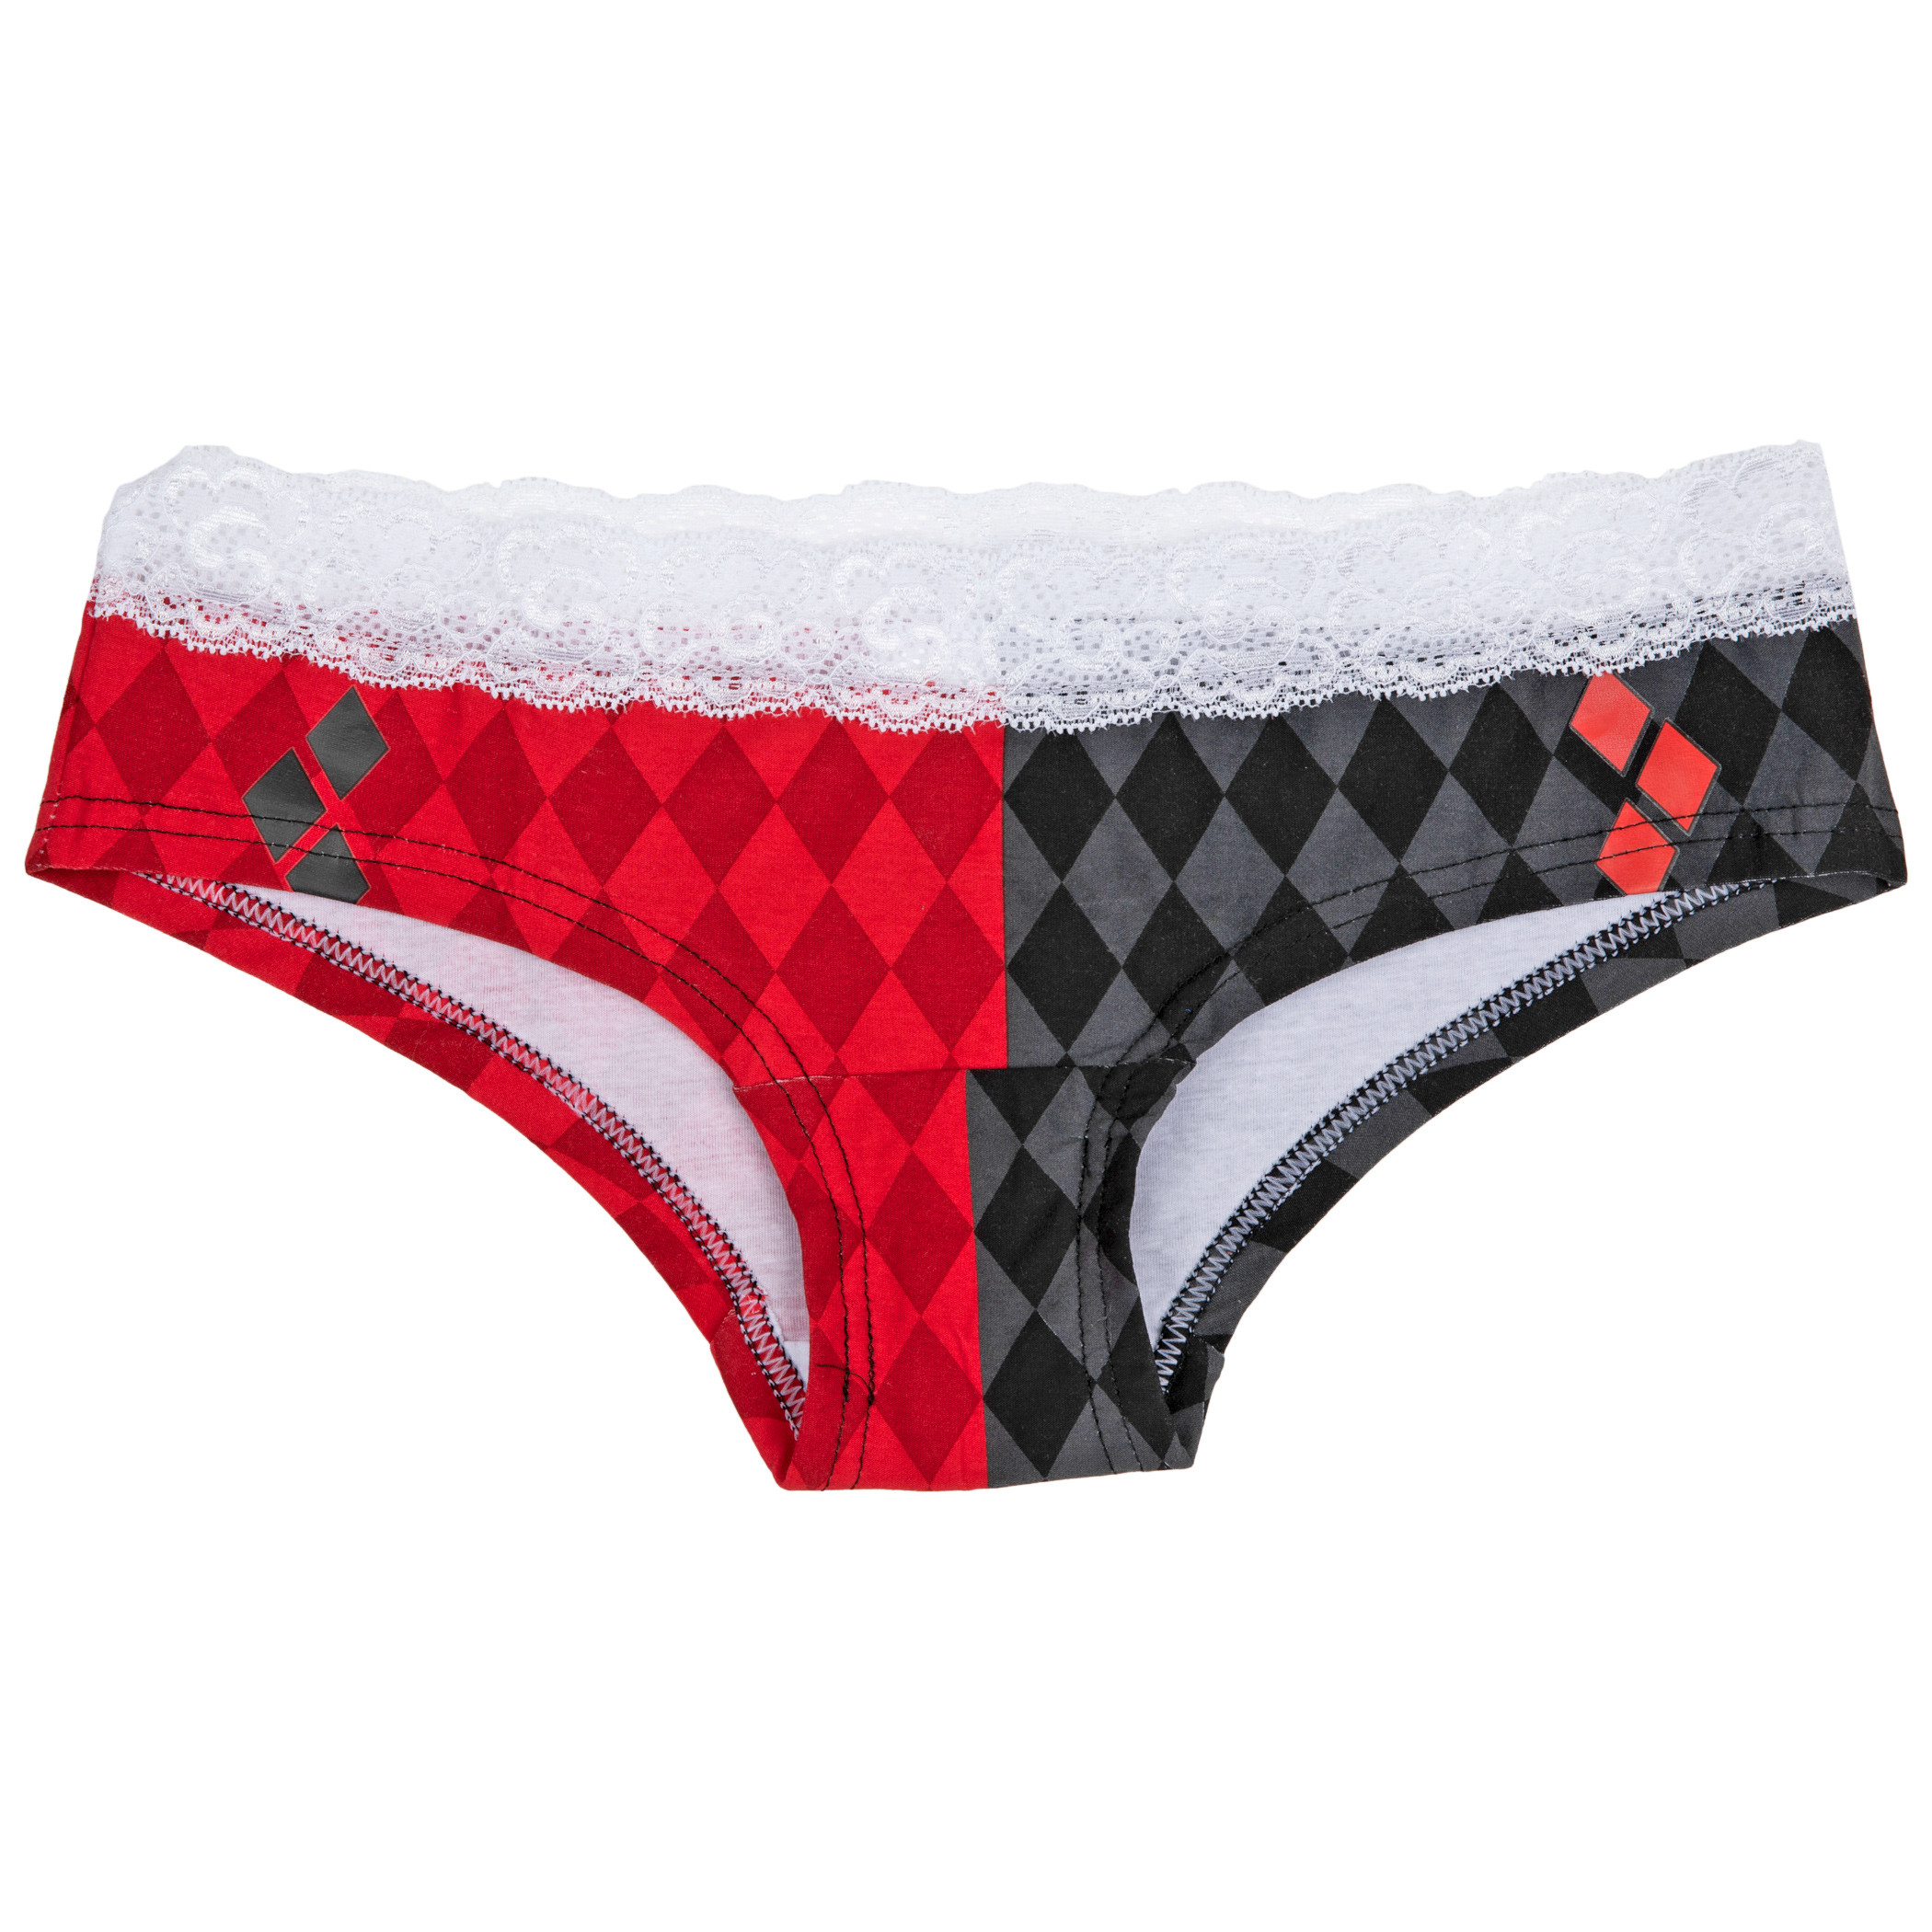 Harley Quinn Print Lacey Women's Underwear Panties